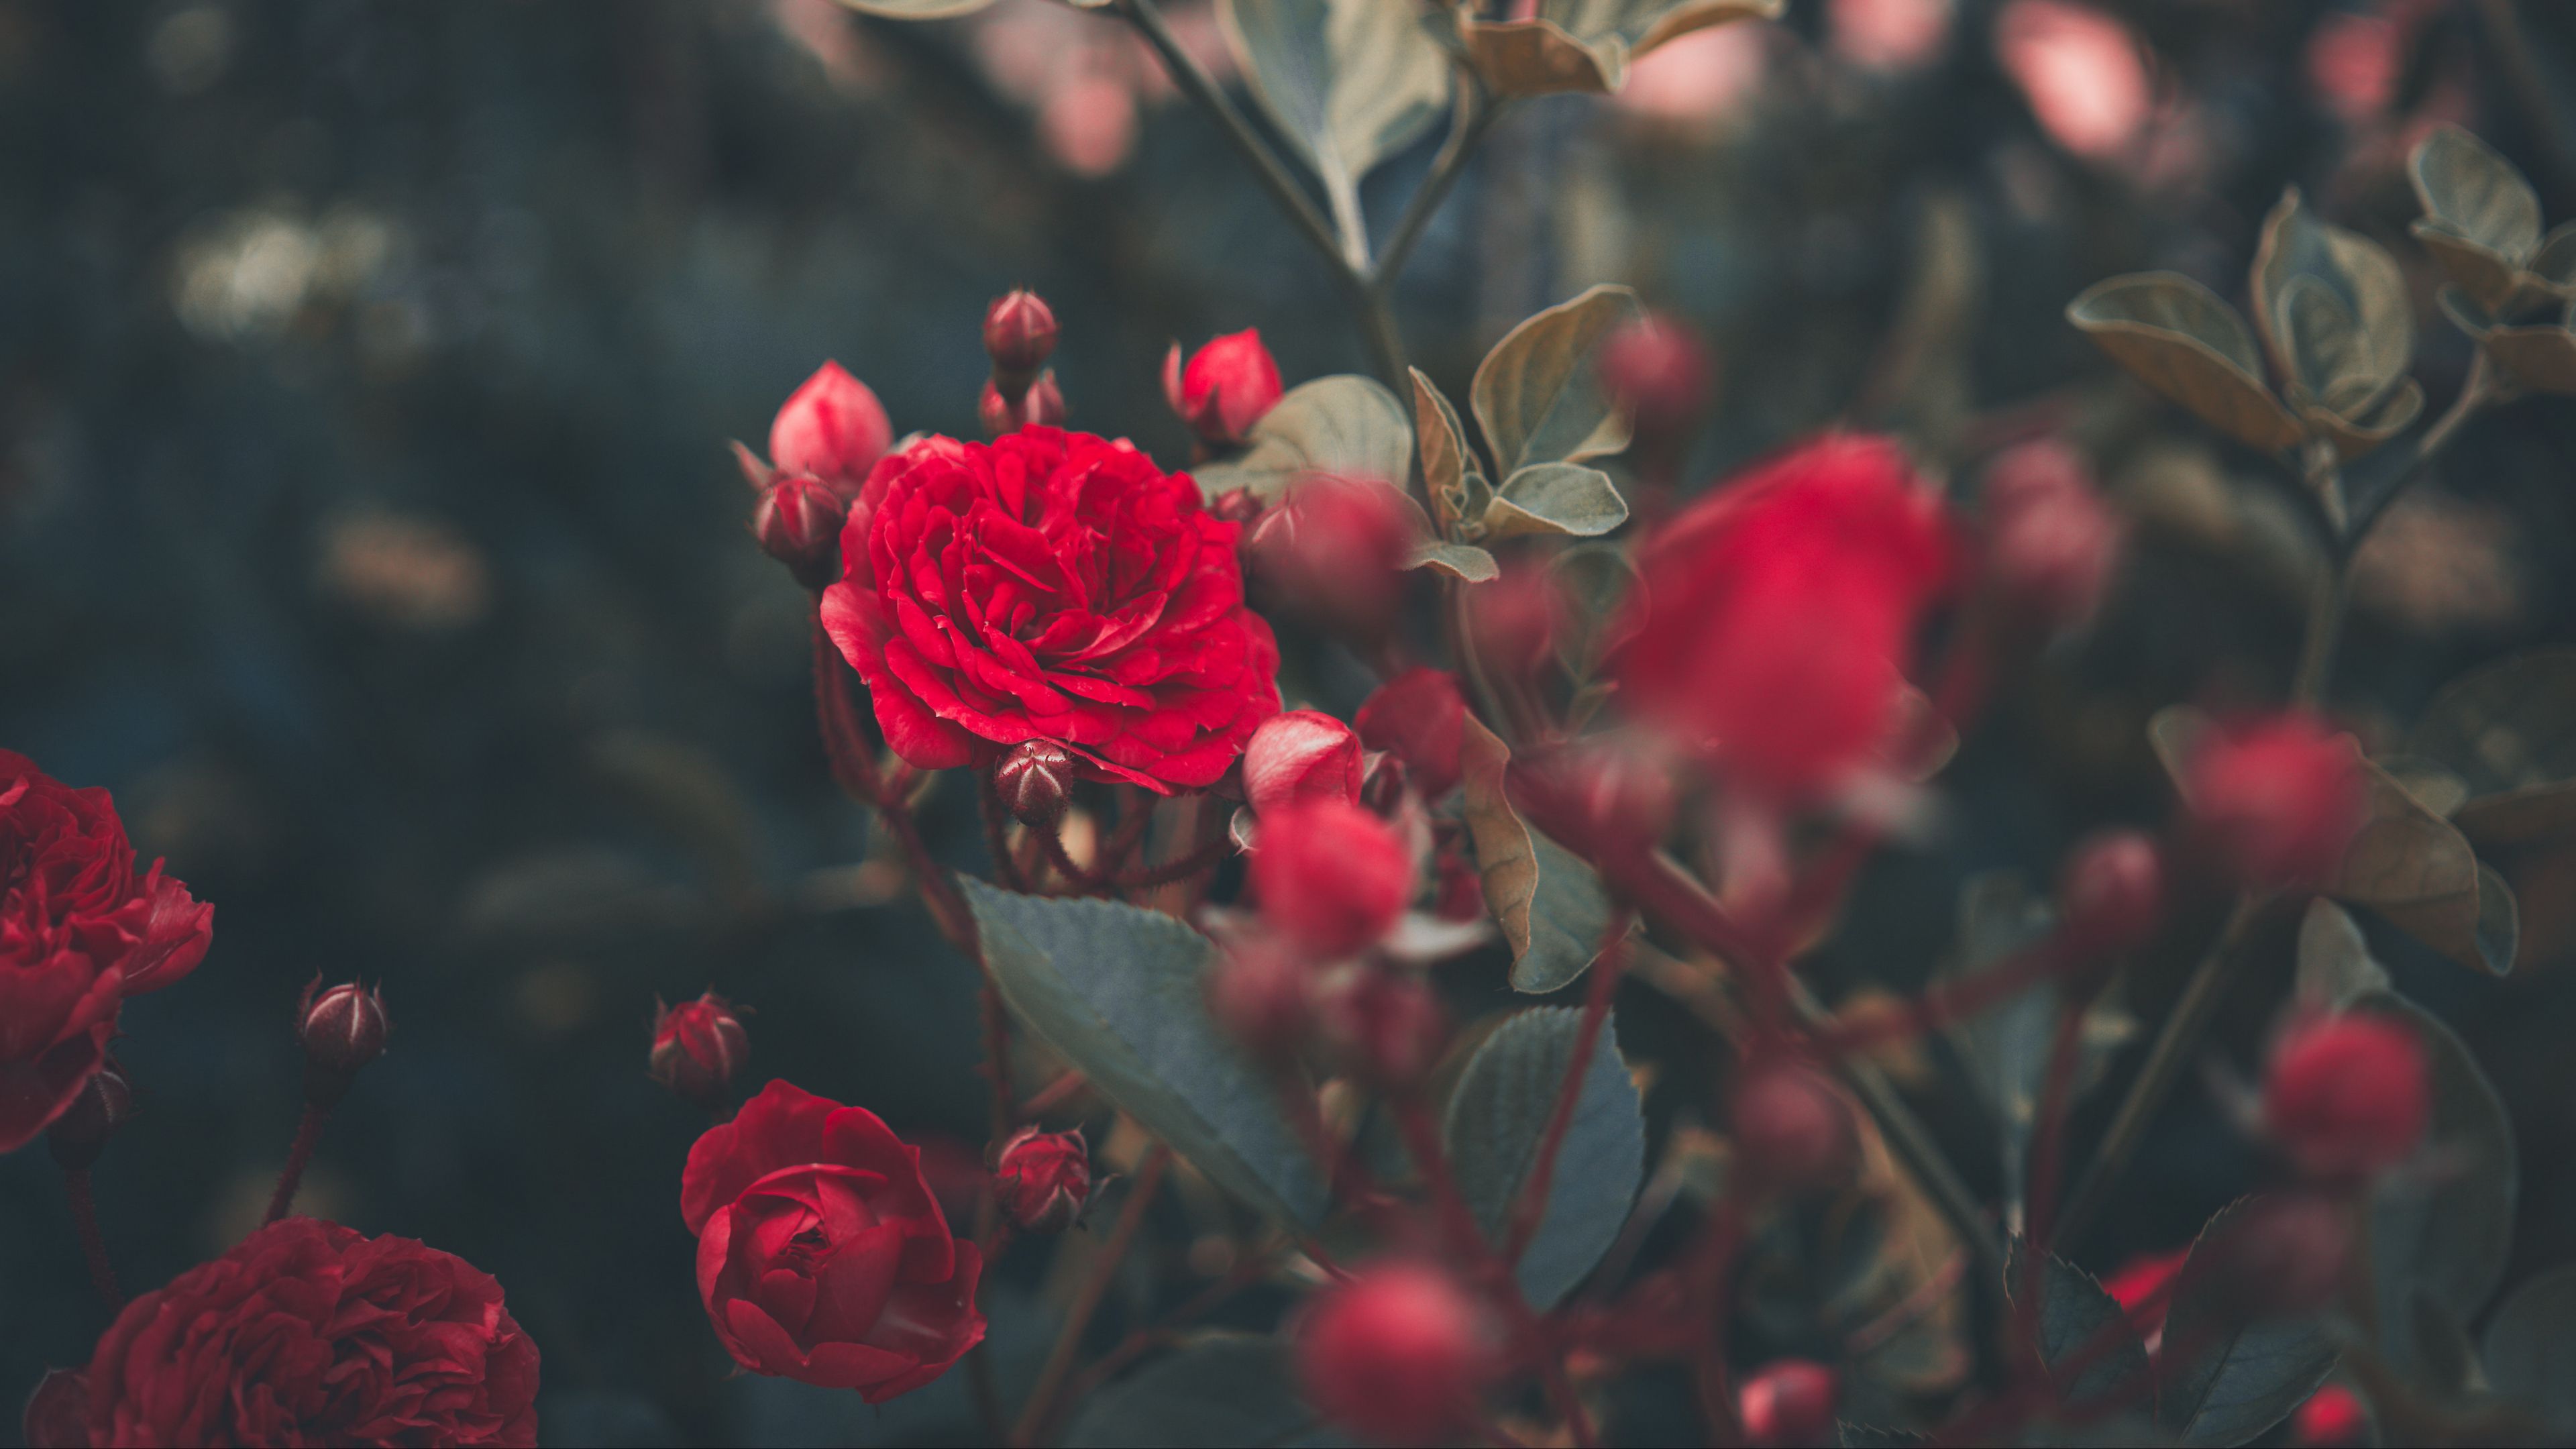 rosentapete rosentapete,blume,blühende pflanze,rot,blütenblatt,gartenrosen